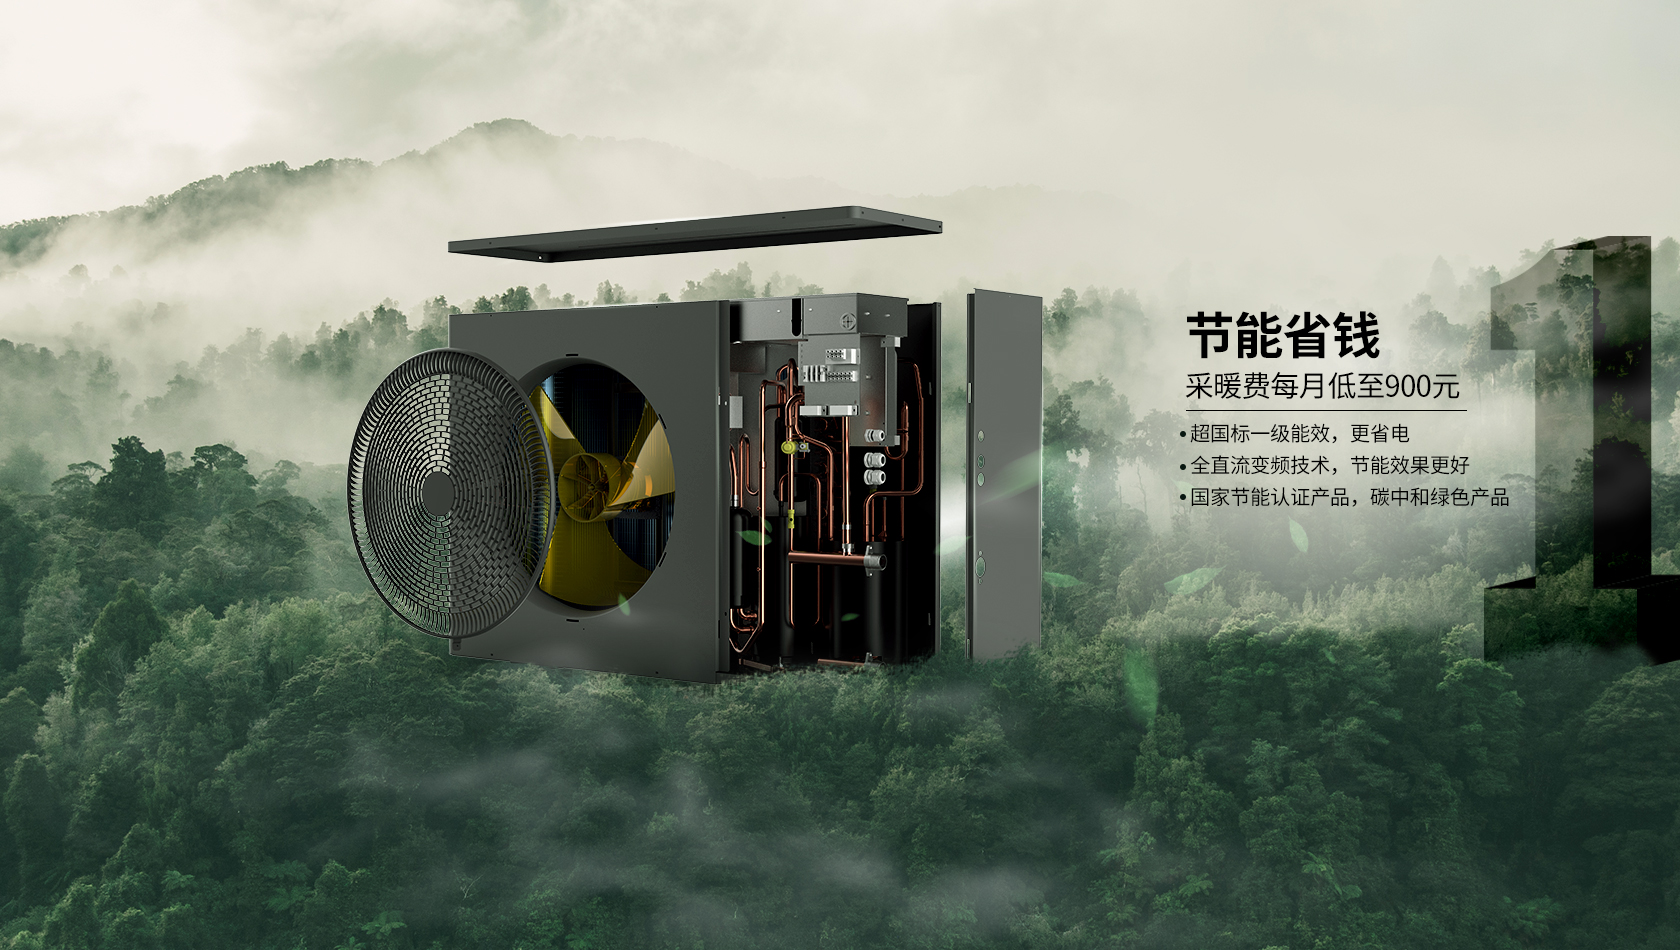 1274万 | 热立方地暖机连续第八年中标北京煤改电